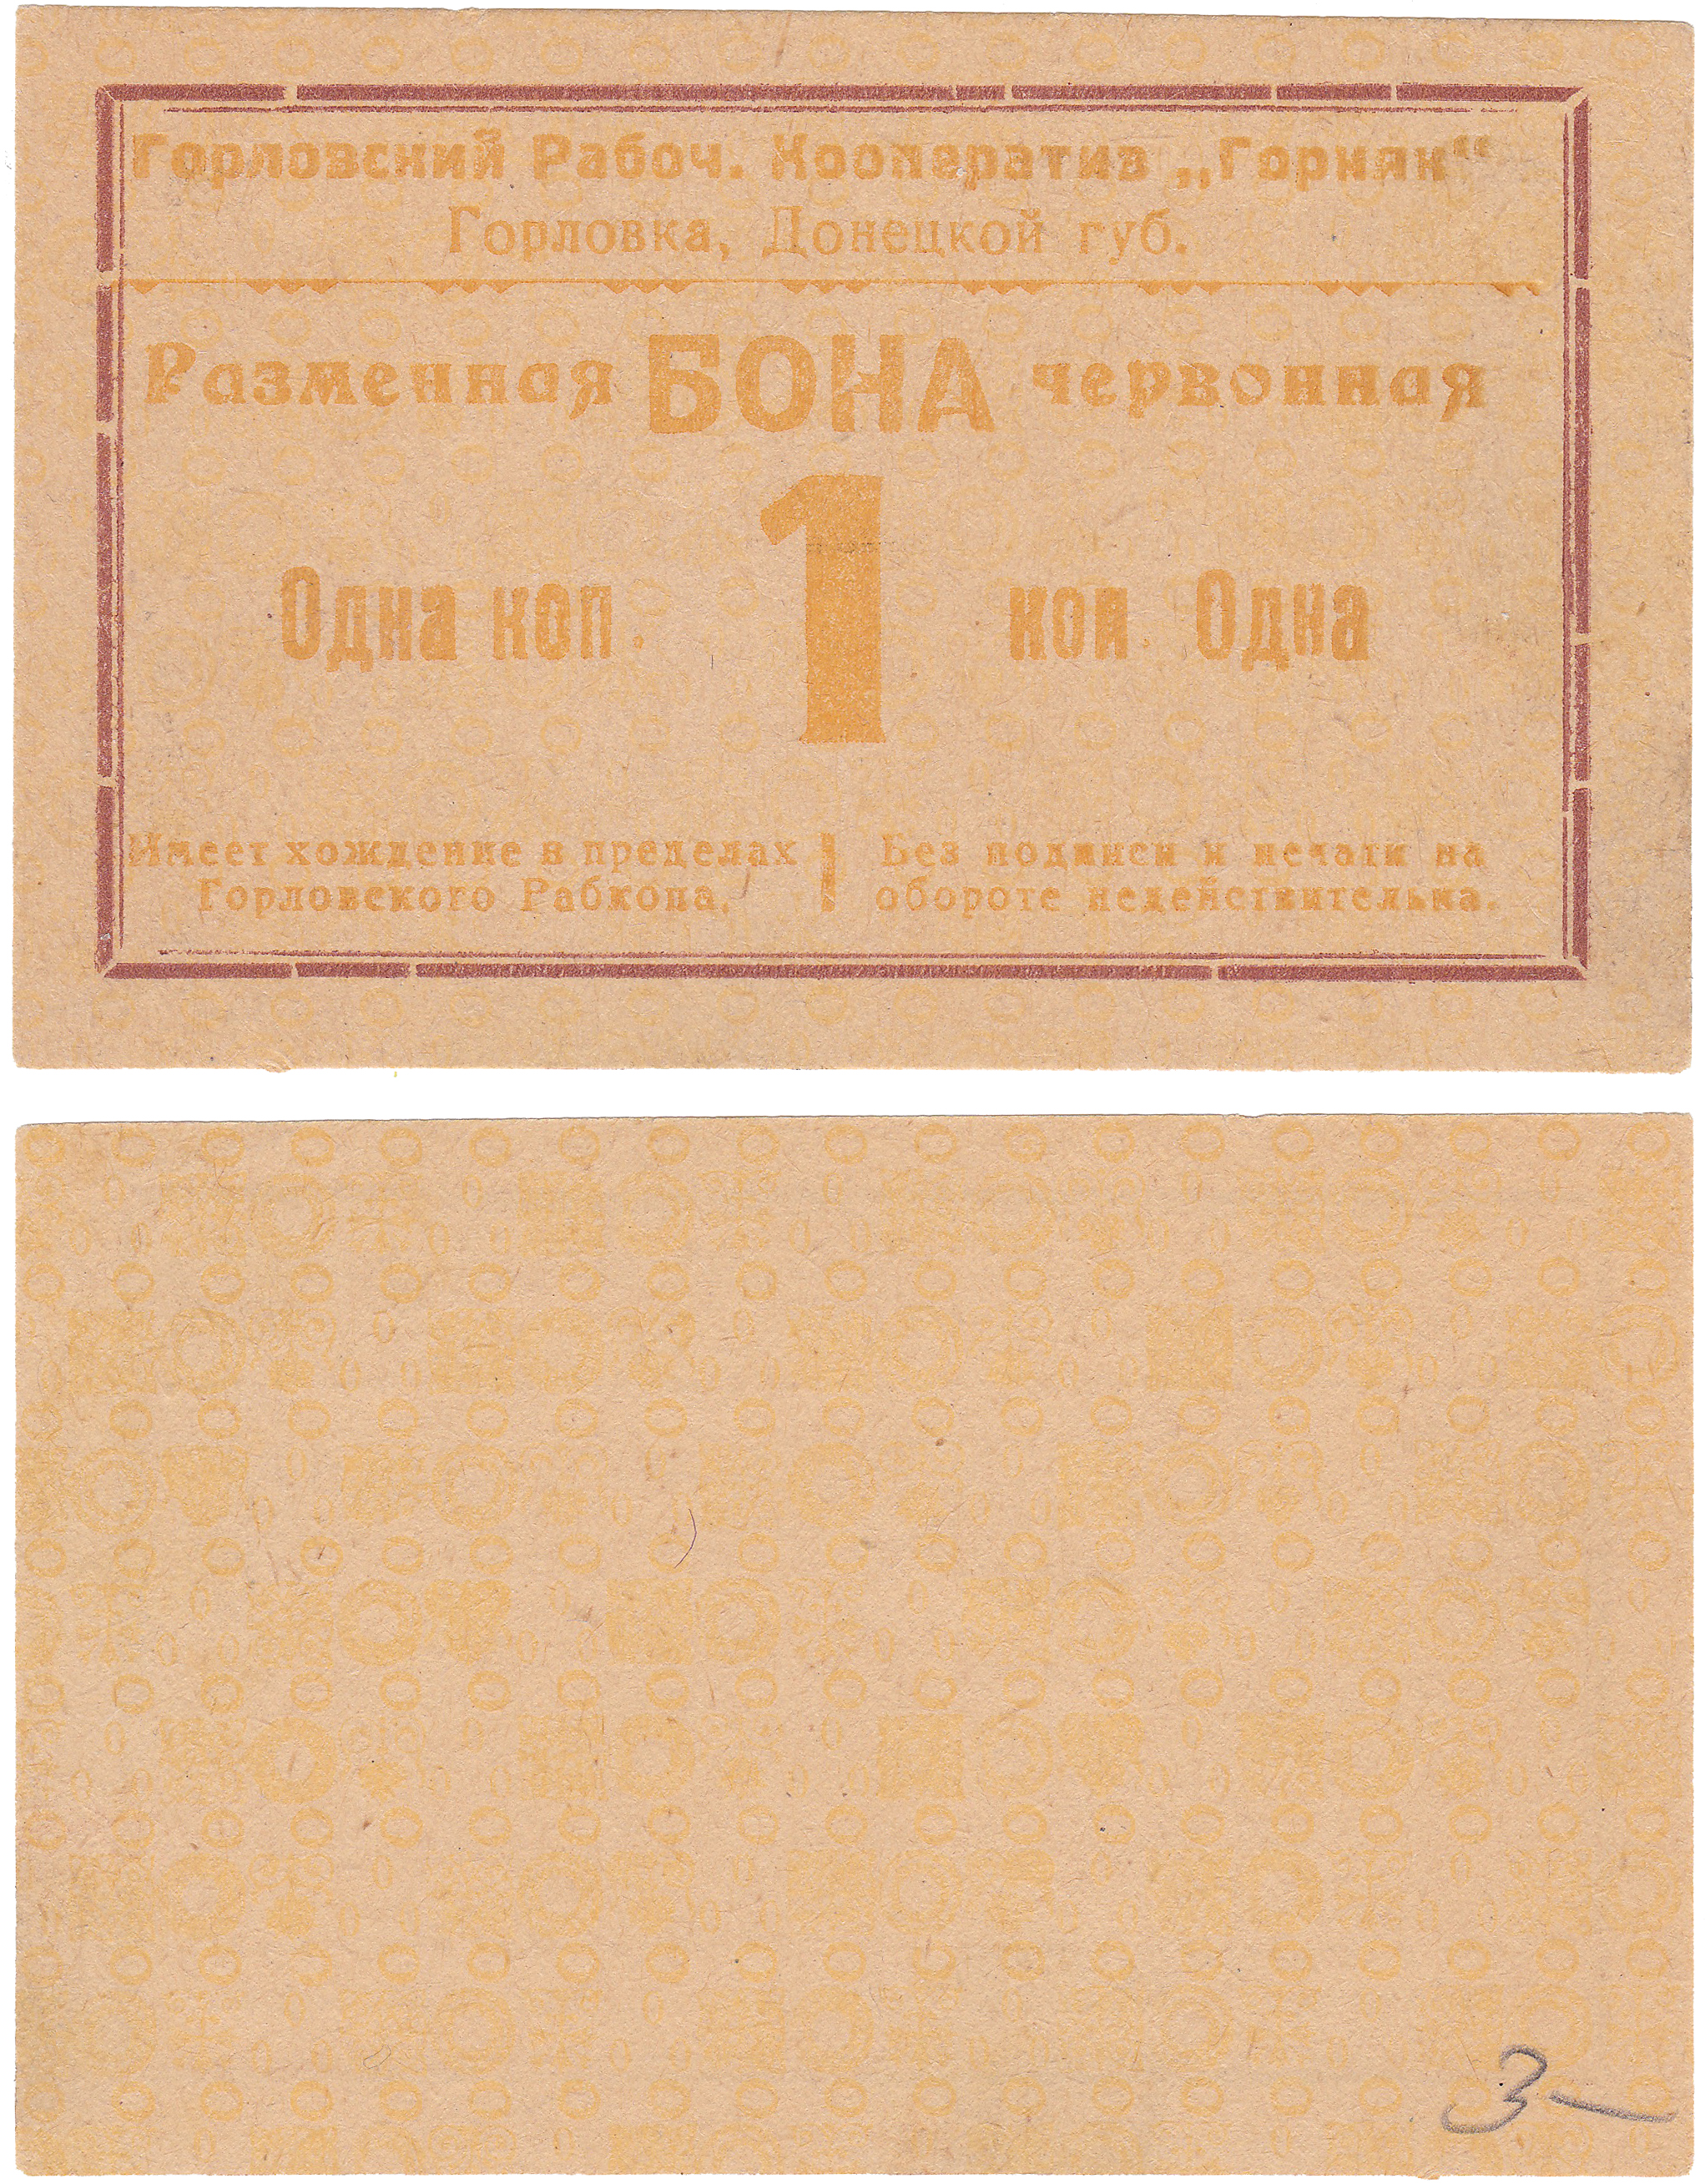 Разменная бона червонная 1 Копейка 1923 год. Горловский Рабочий Кооператив 